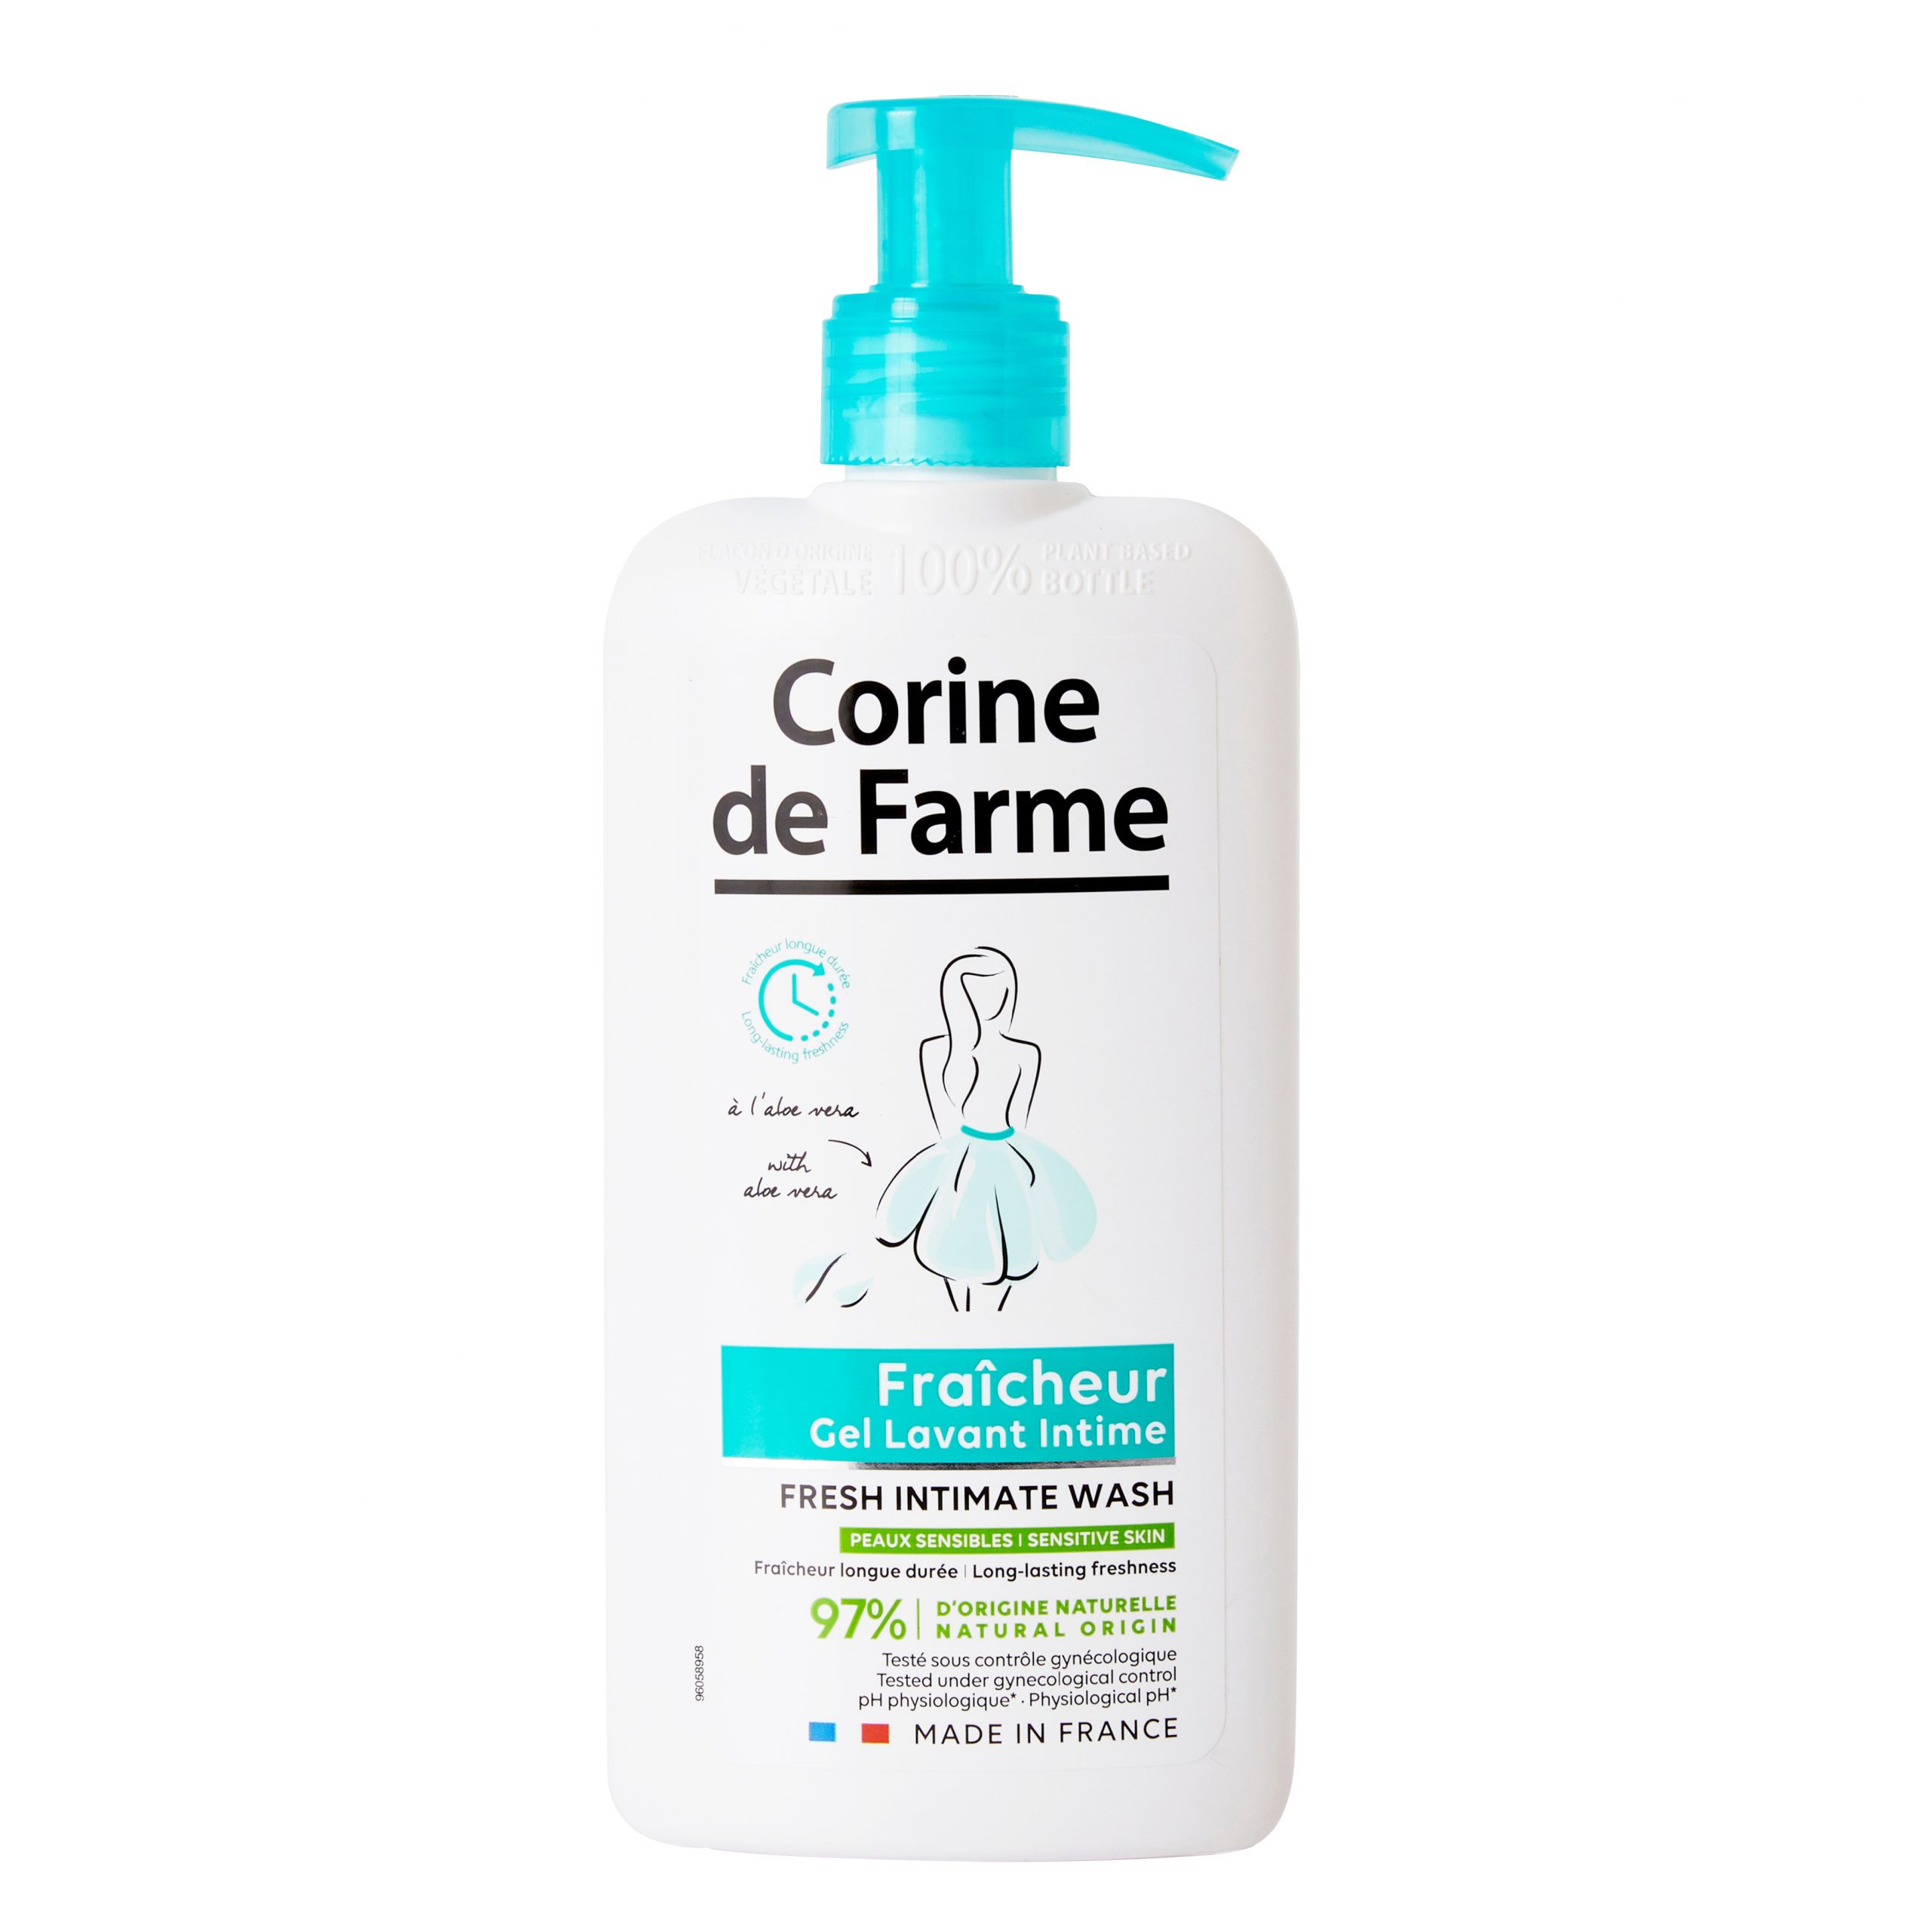 Vệ sinh phụ nữ với sản phẩm CORINE DE FARME gel làm sạch và khử mùi